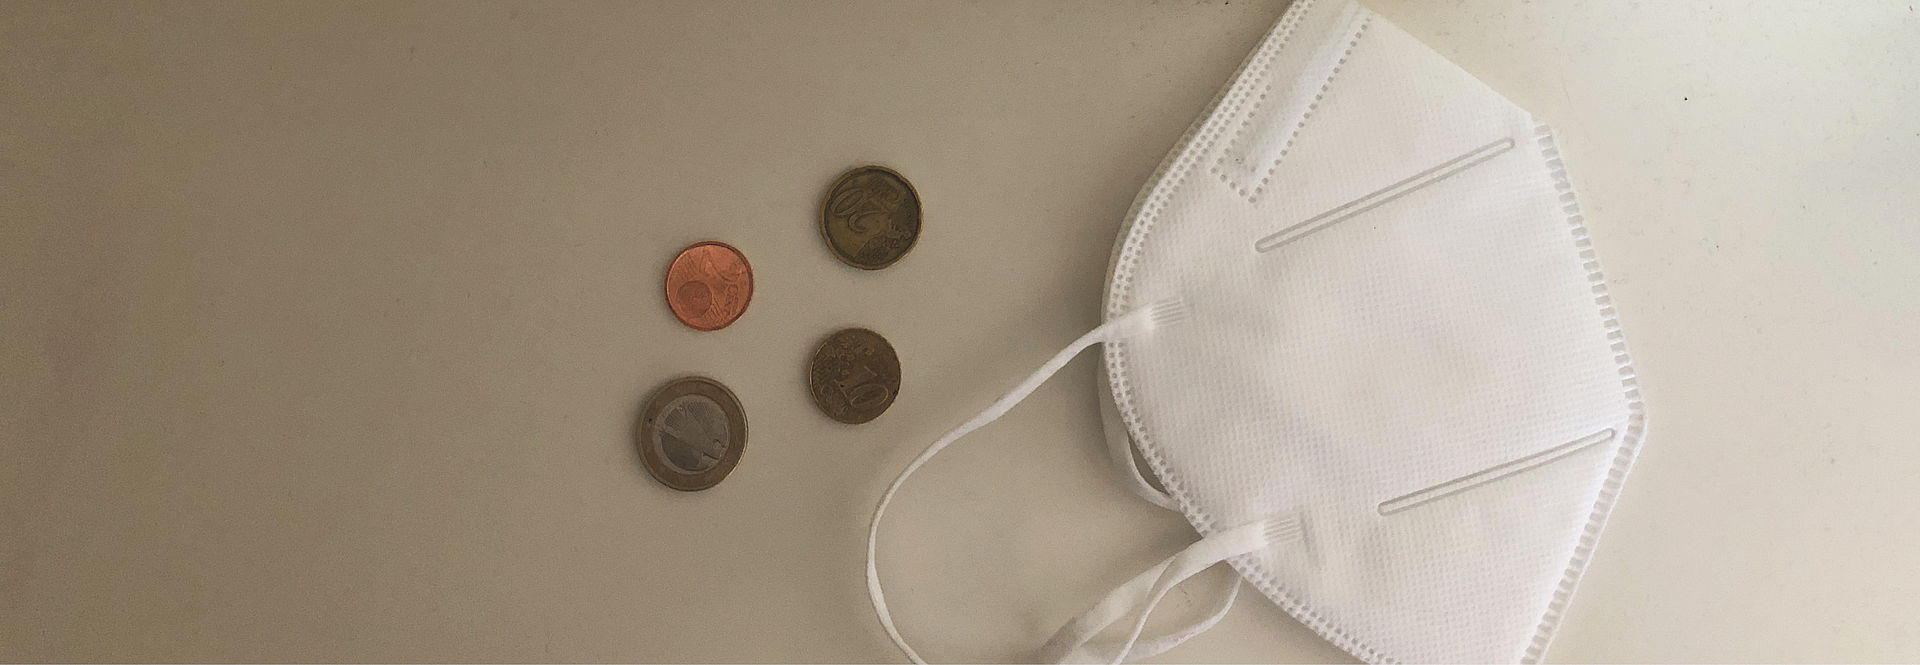 Eine FFP2-Maske und Geldmünzen liegen auf einem Tisch. 